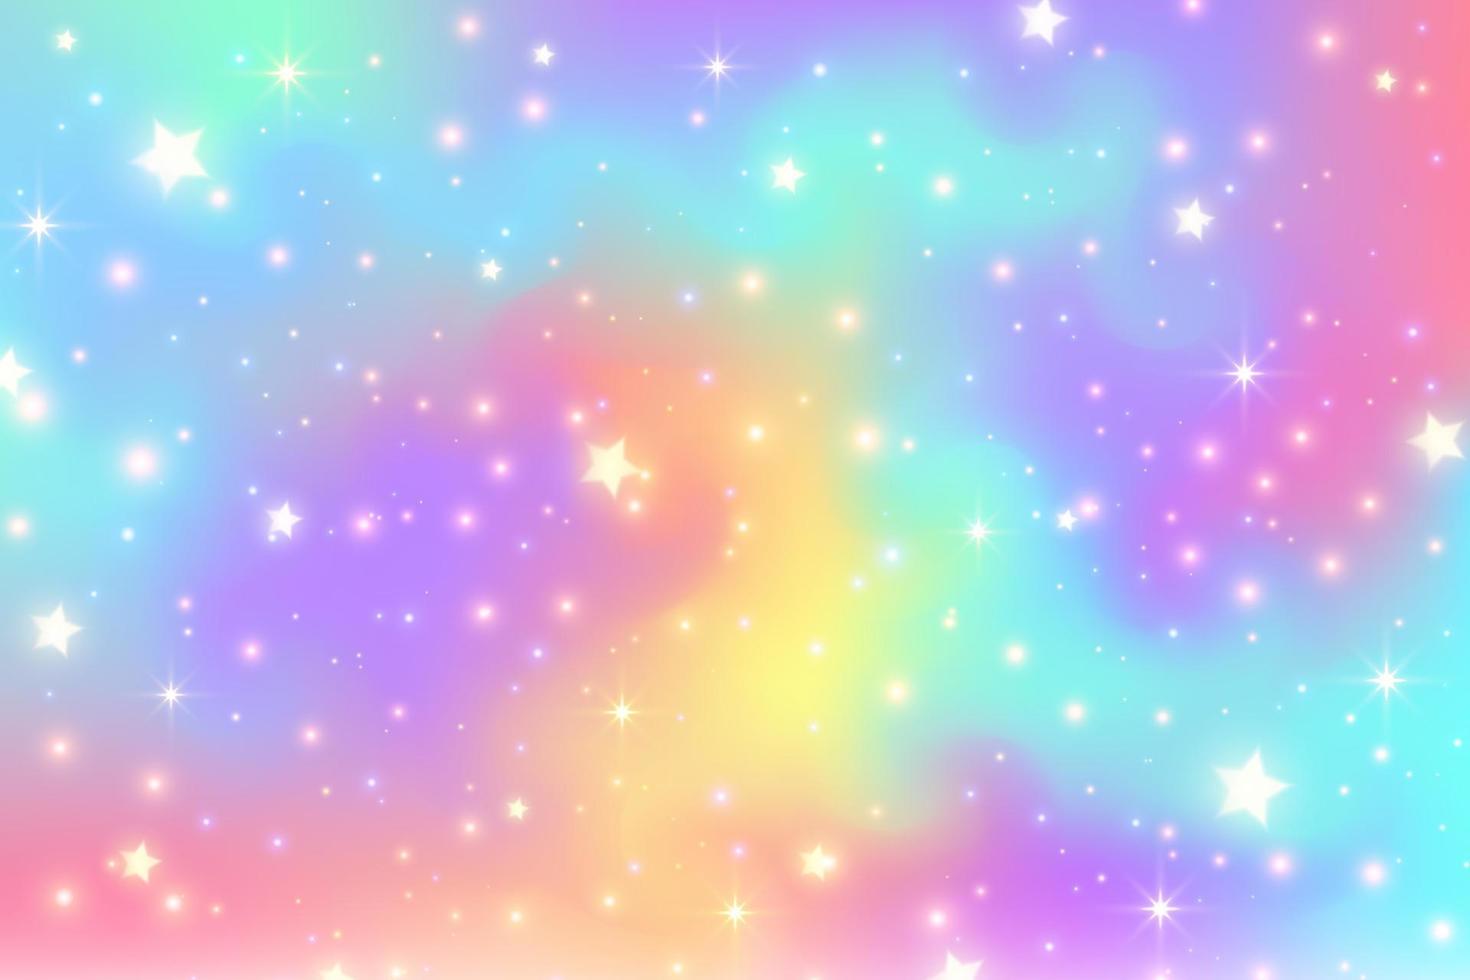 Regenbogen-Einhorn-Hintergrund. pastellfarbverlaufshimmel mit glitzersternen. magischer rosa Galaxienraum. Vektor Fee abstraktes Muster.